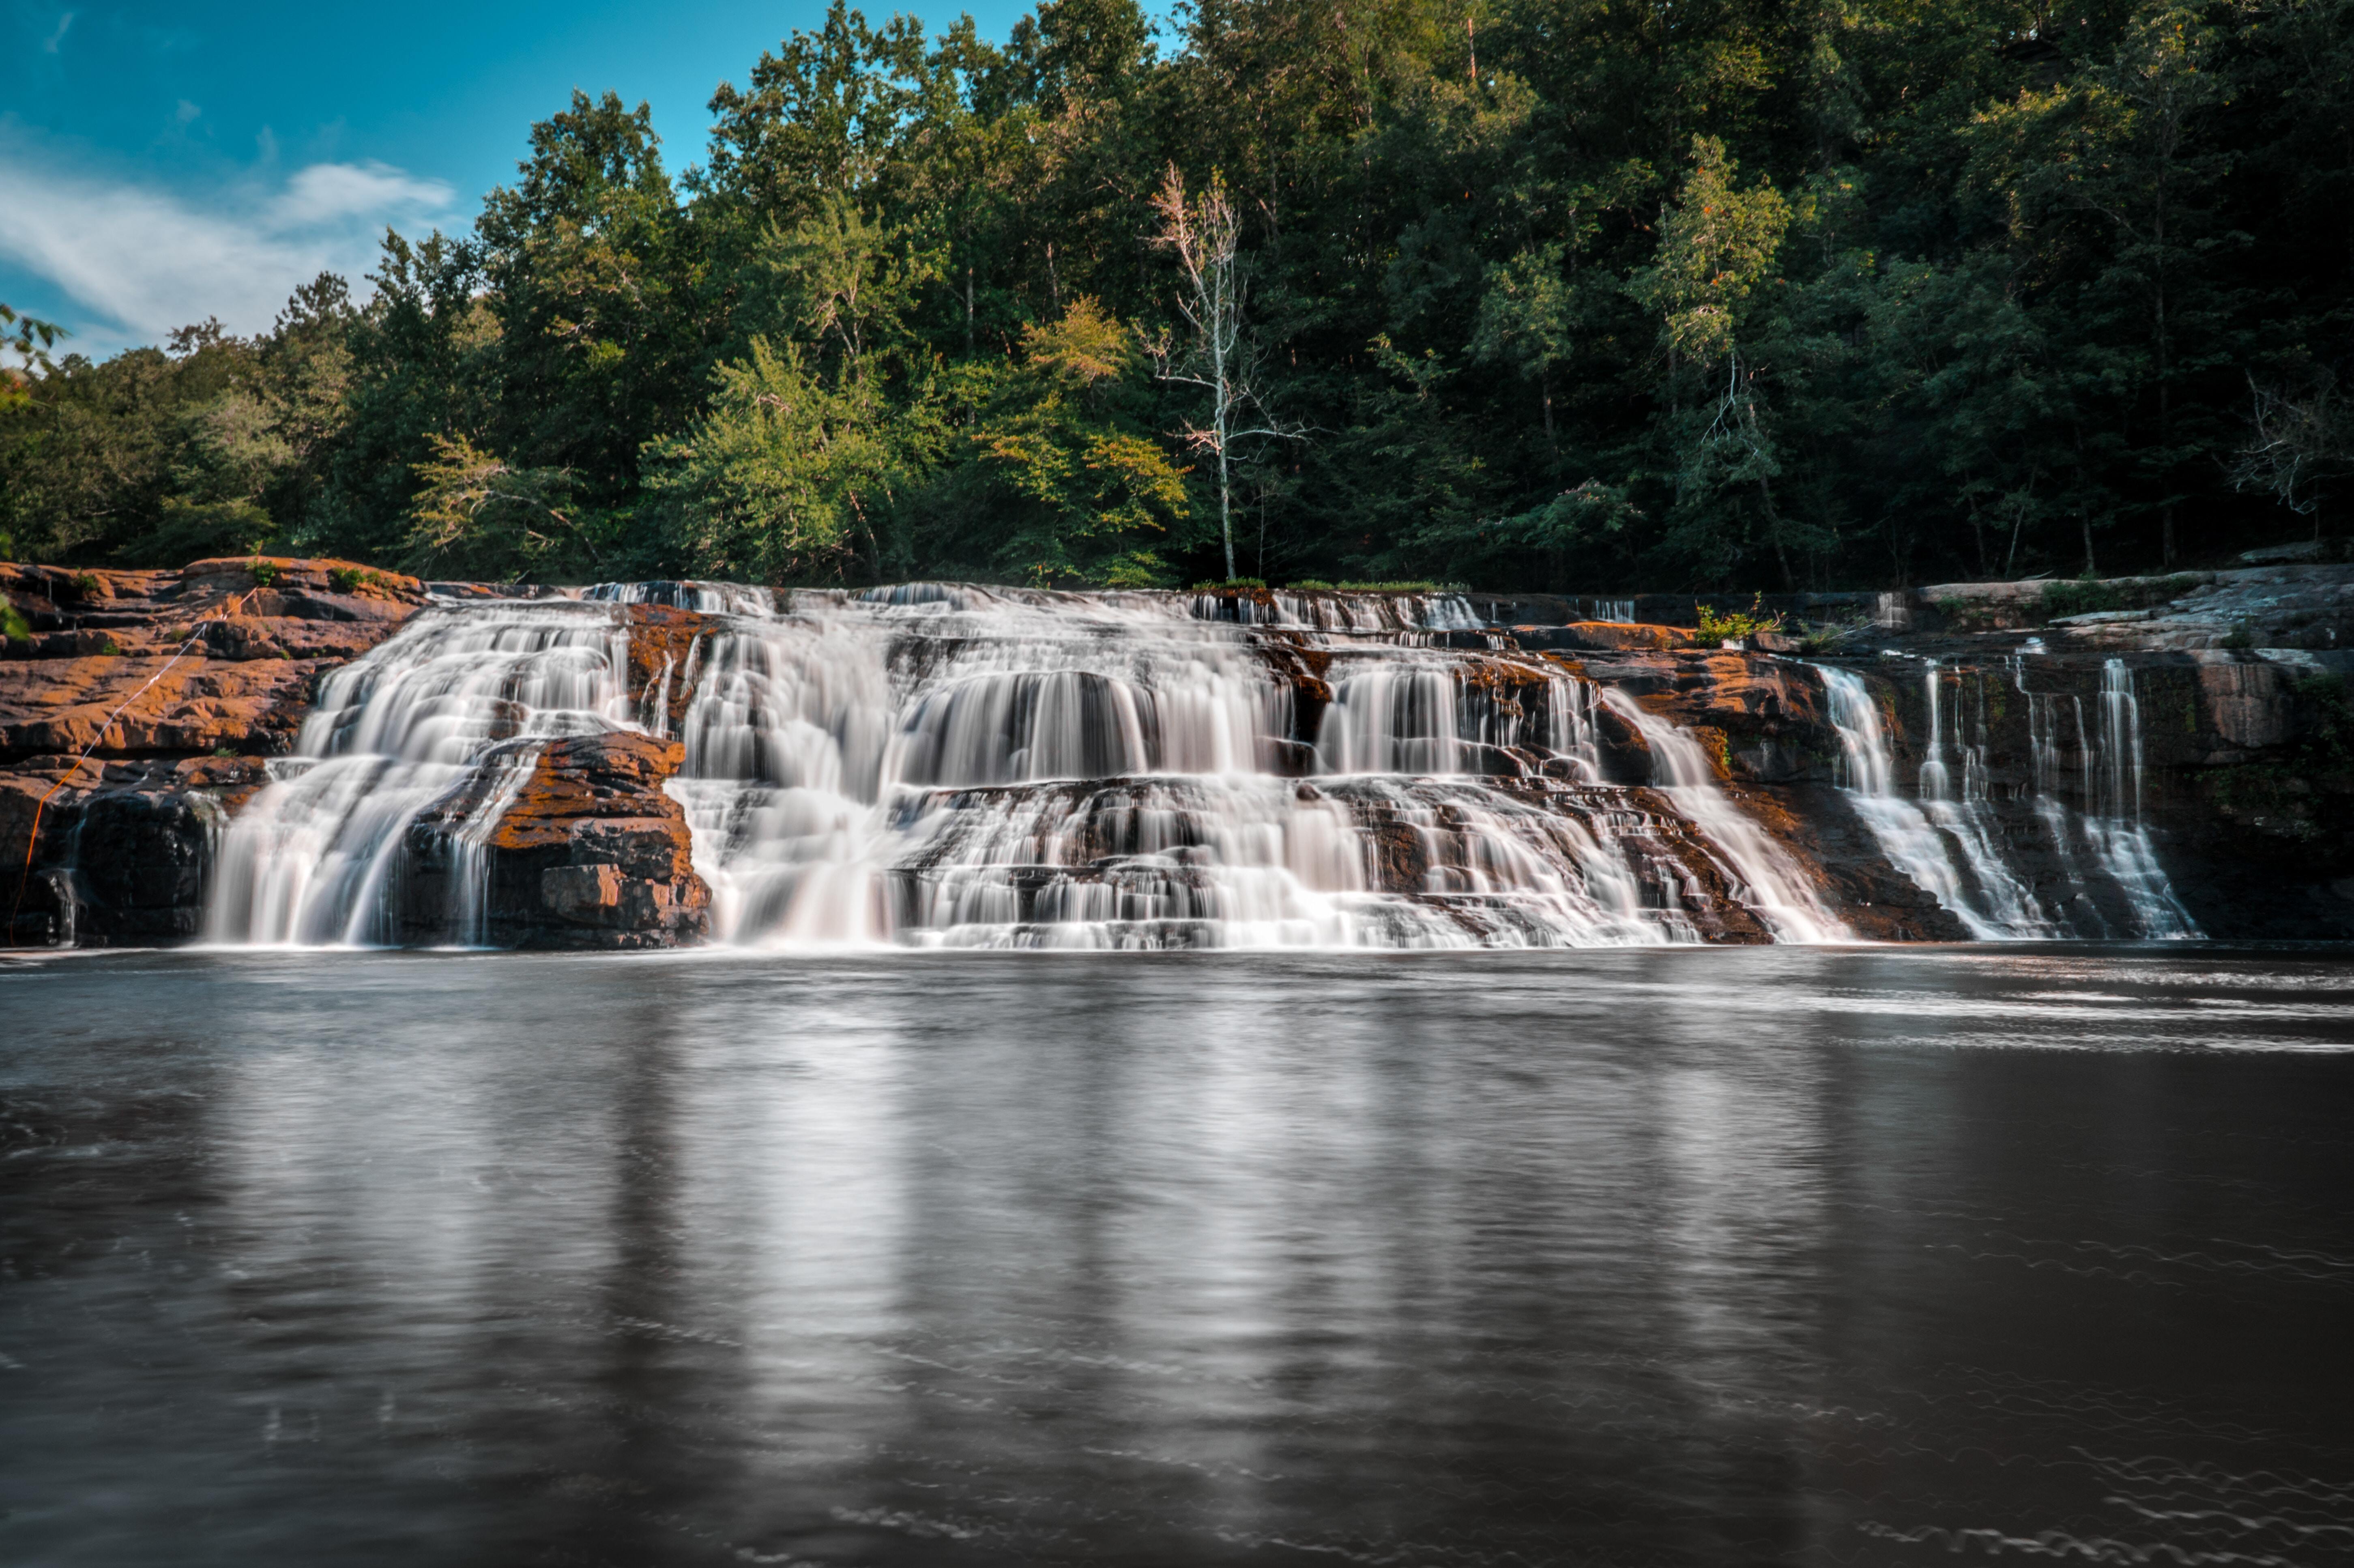 High Falls in Geraldine, Alabama.